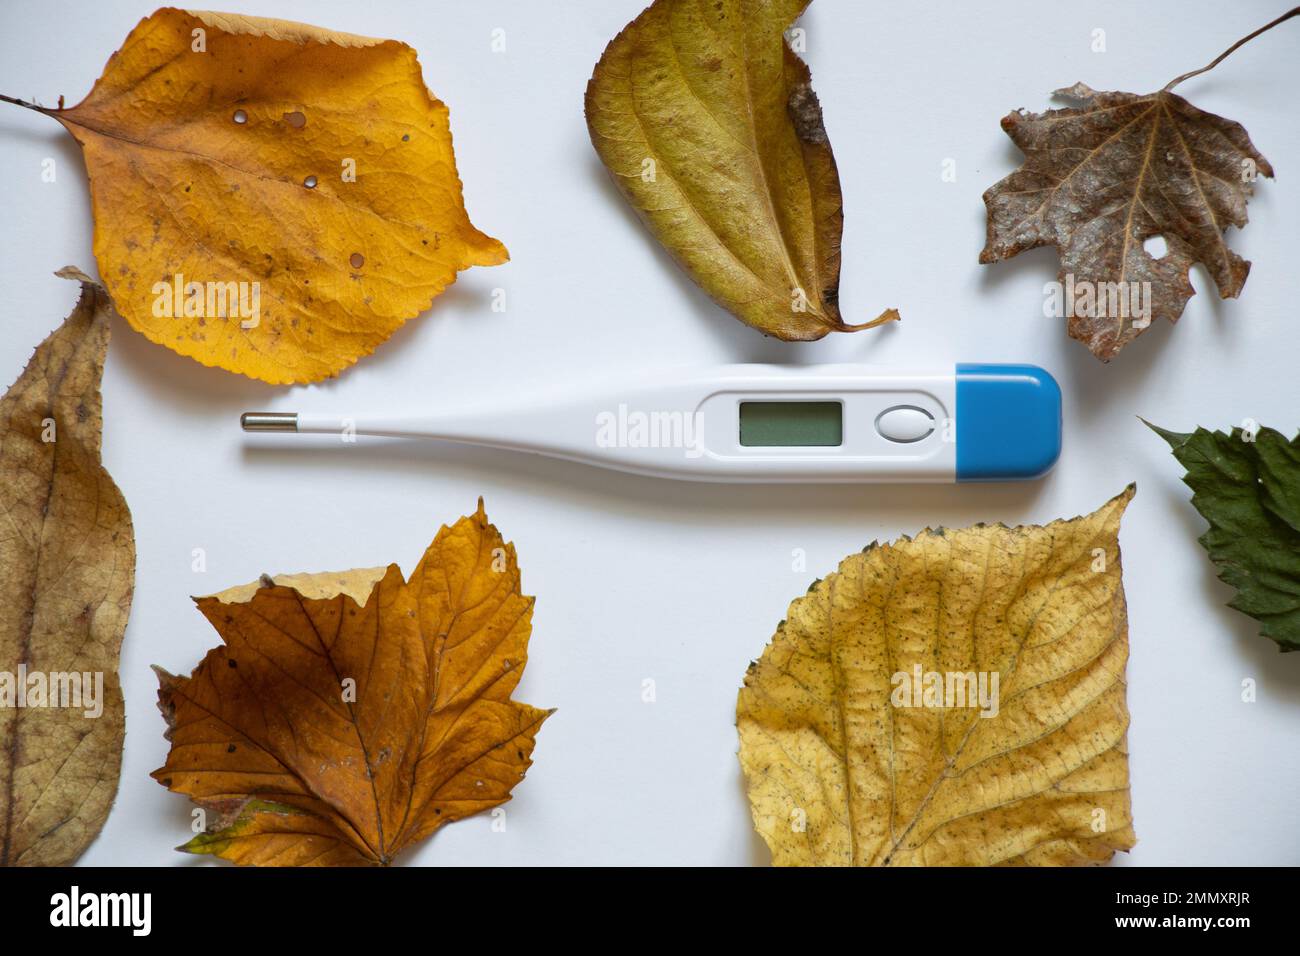 il termometro elettronico si trova su uno sfondo bianco in foglie gialle autunnali, influenza autunnale stagionale, malattie autunnali, febbre, medicina Foto Stock